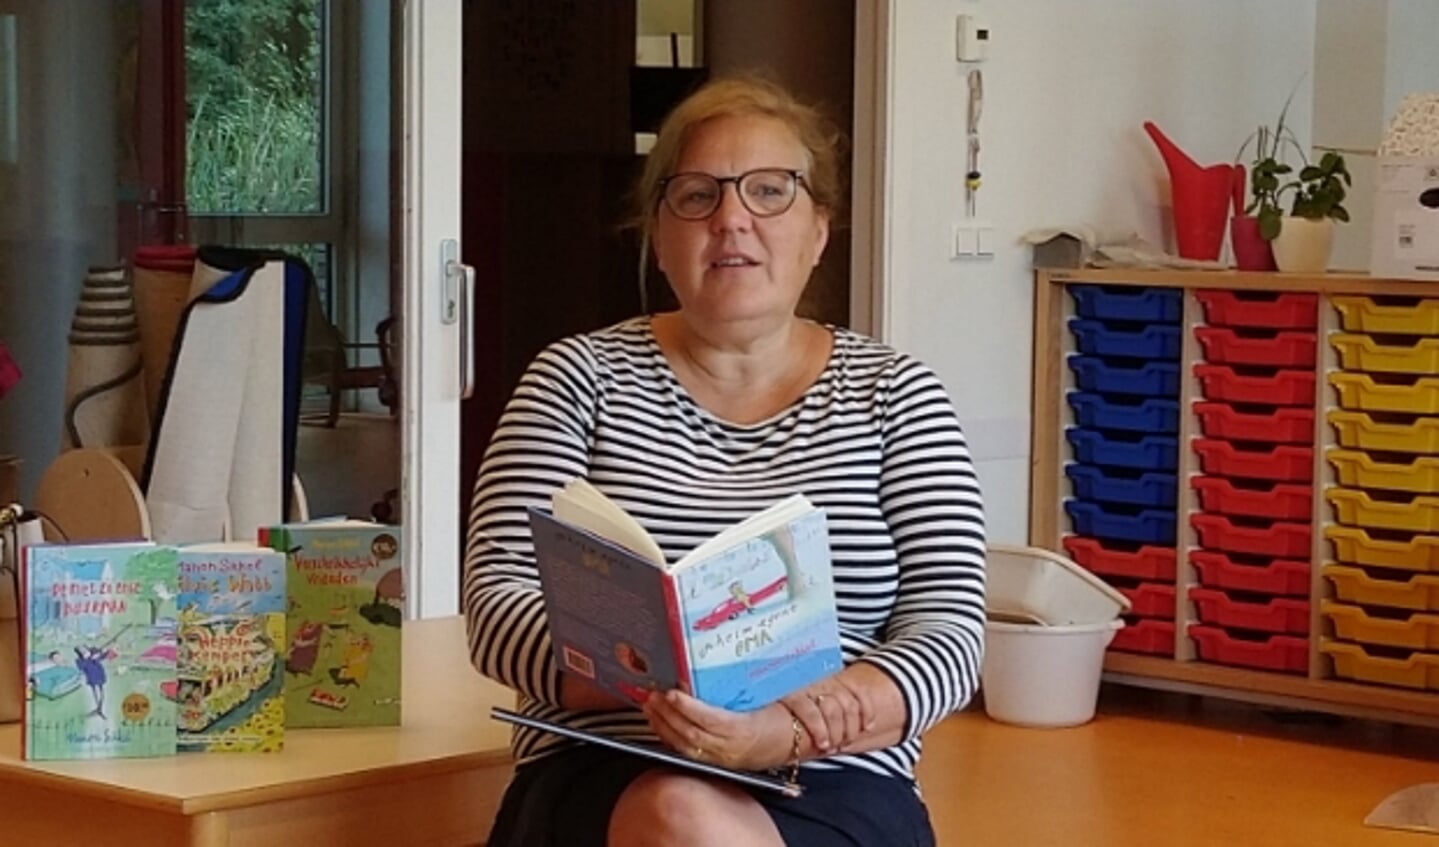 Schrijfster Manon Sikkel las afgelopen donderdag voor in jenaschool de Zevensprong. Foto: Jeannette Broer van der Ham